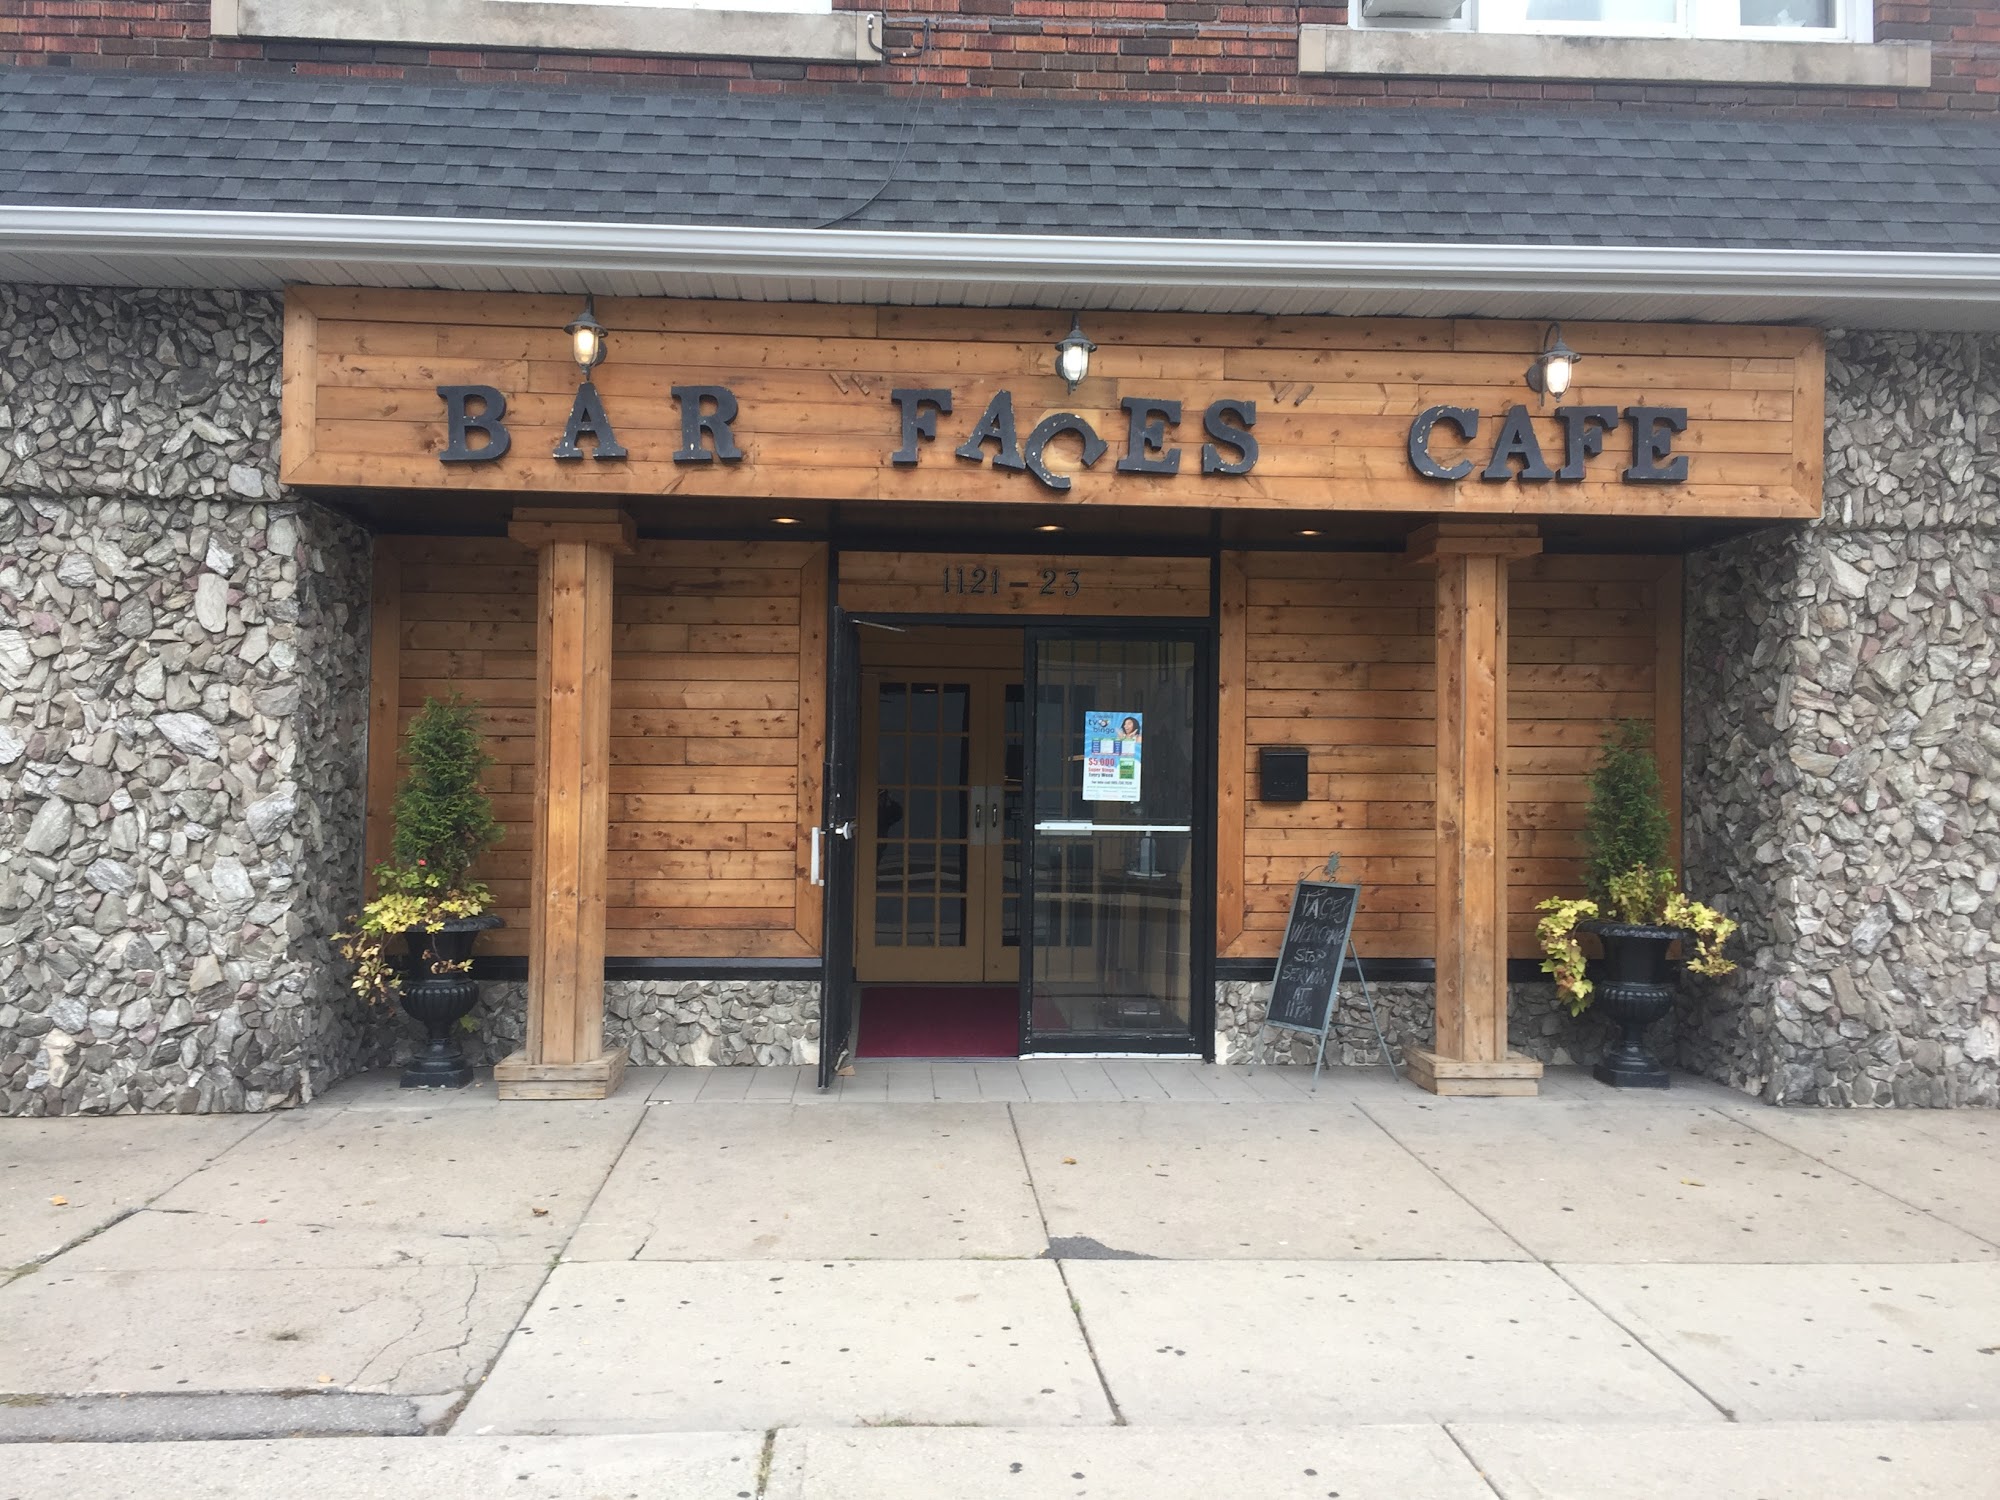 Faces Cafe & Bar